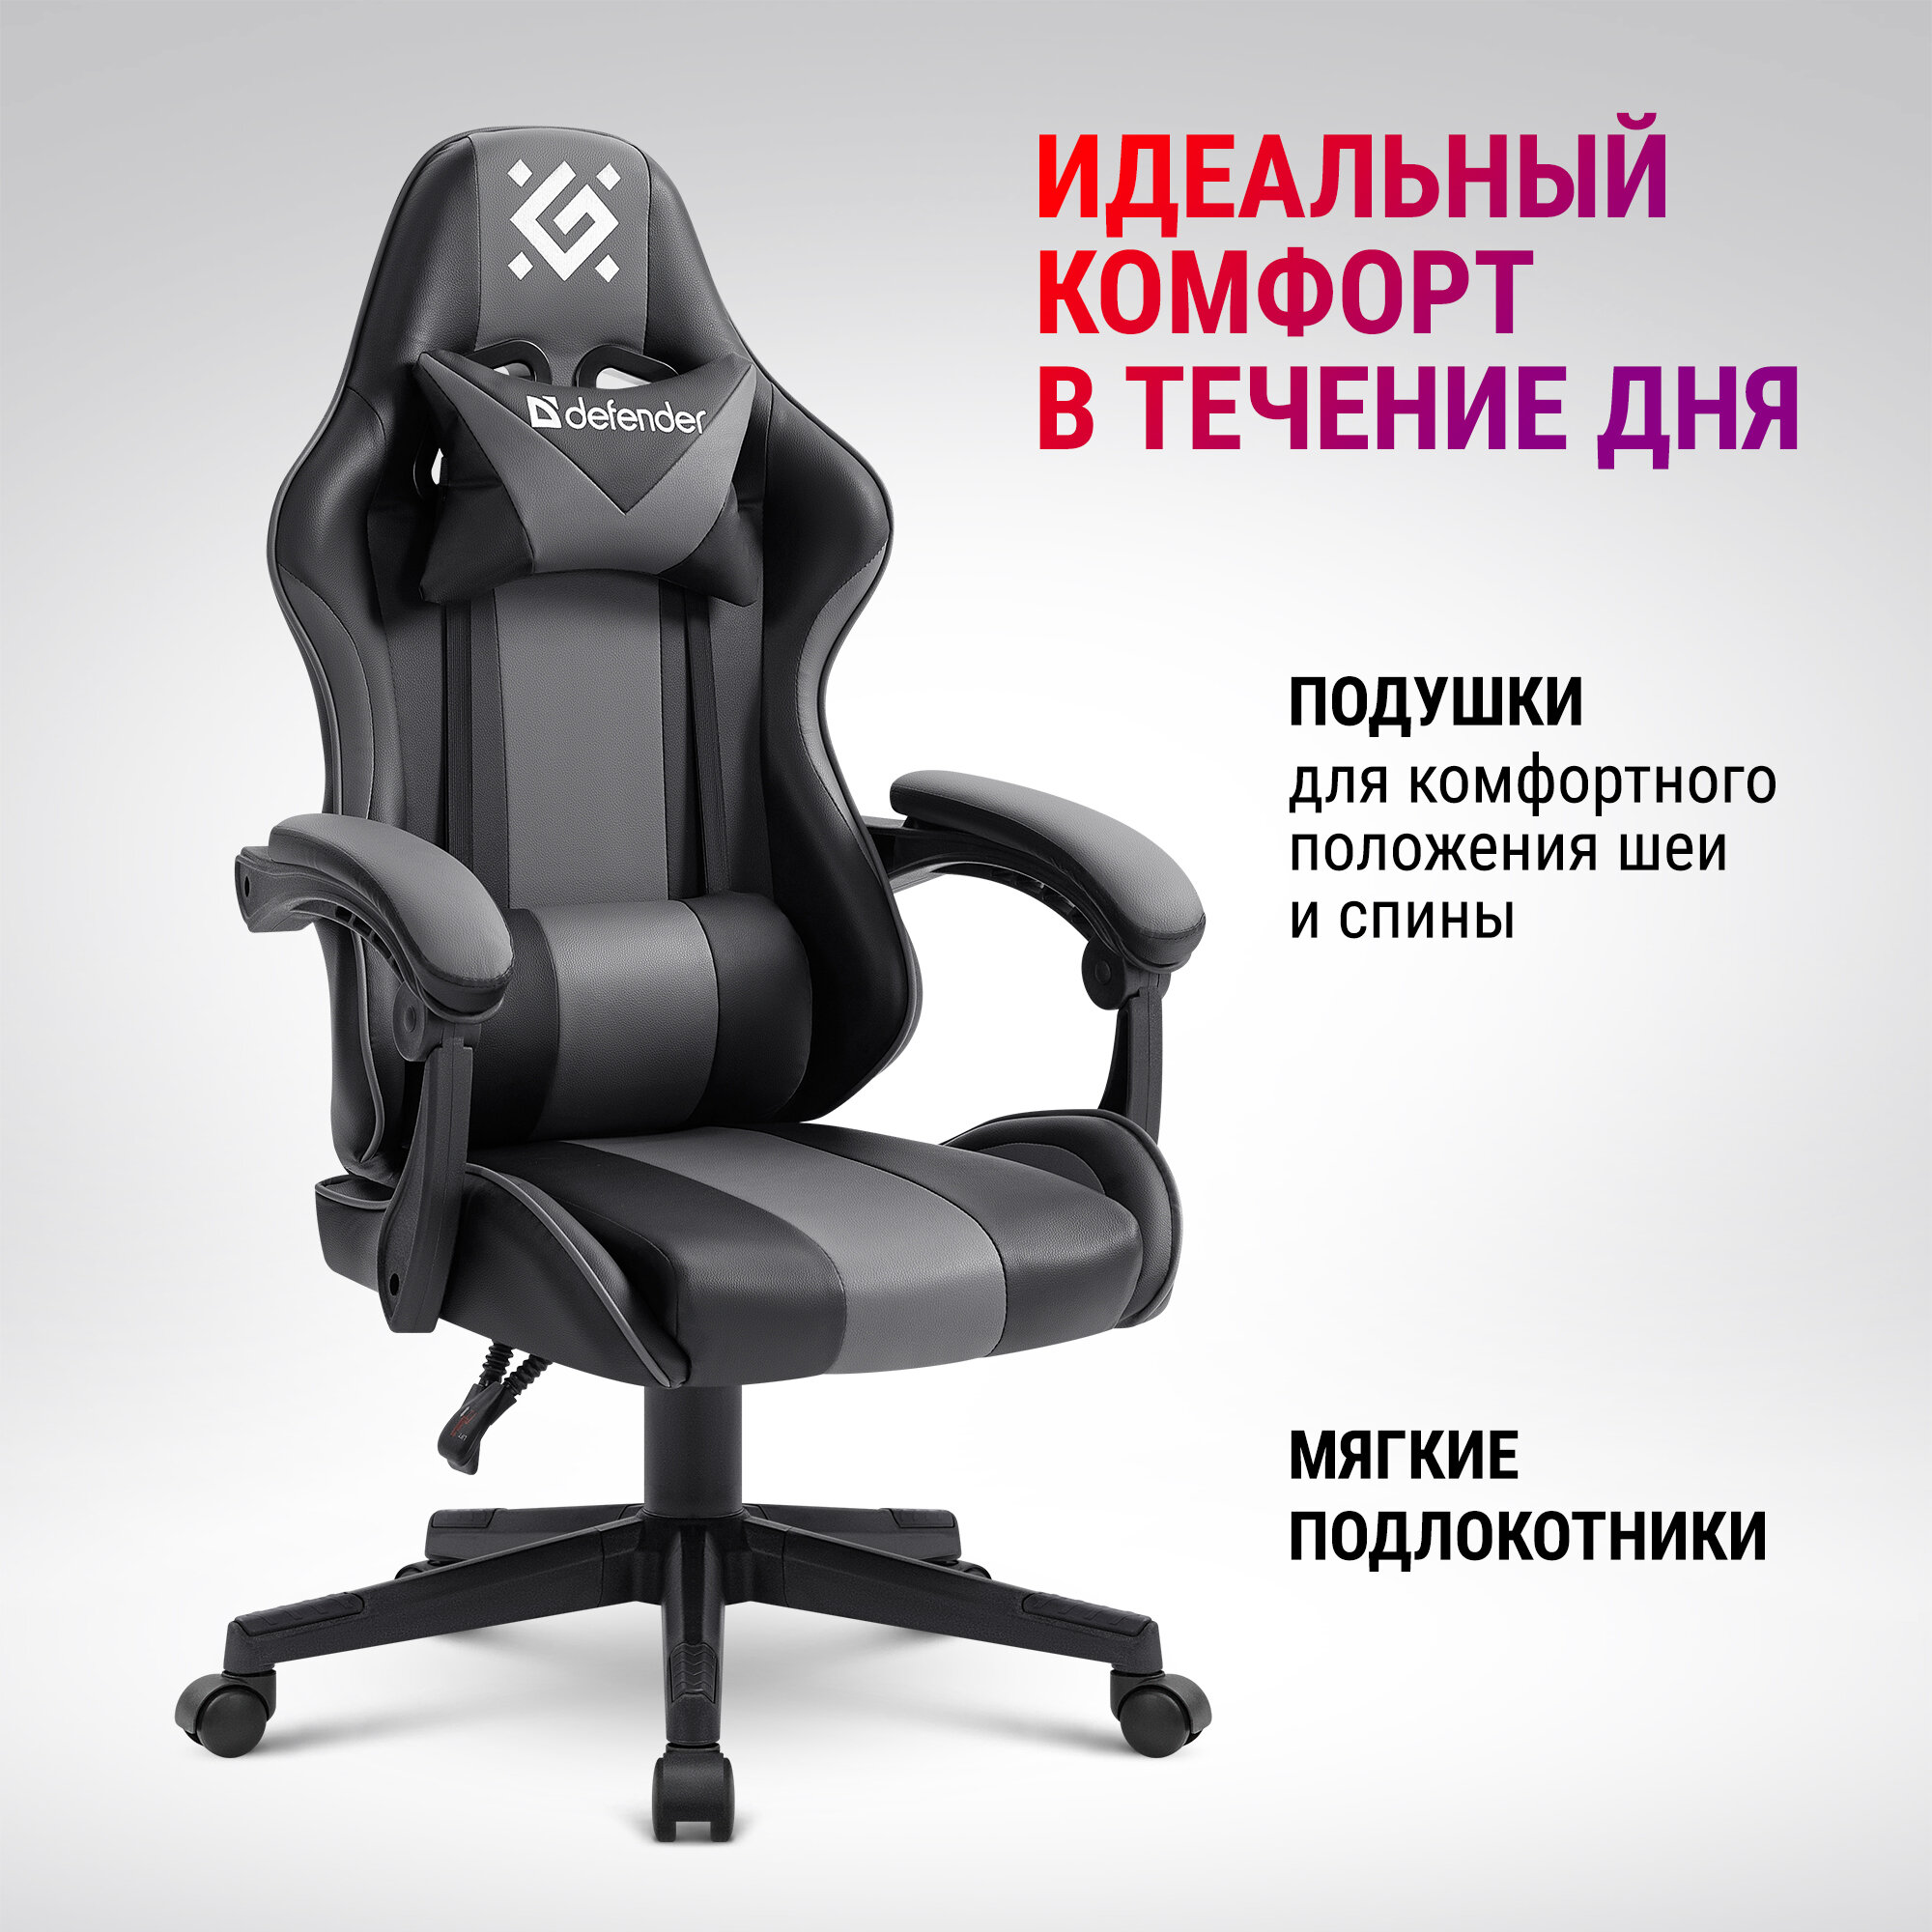 Кресло компьютерное / игровое кресло / Геймерское кресло Defender Cosmic Черный/Серый, газлифт класс 4, 2 подушки